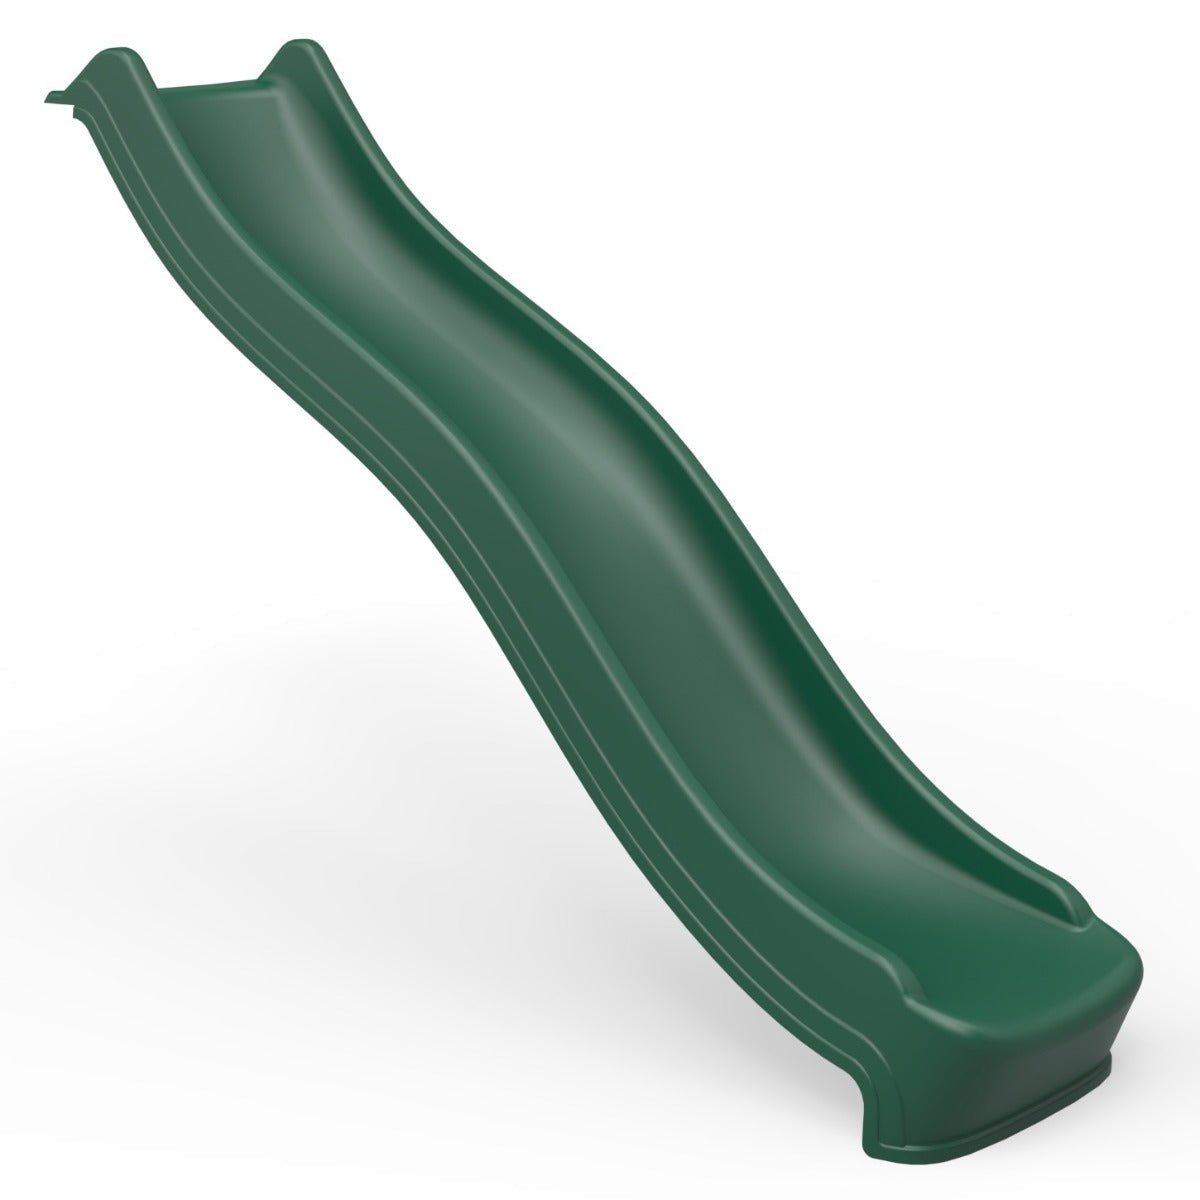 Rebo 8FT (220cm) Universal Children’s Plastic Garden Wave Slides - Dark Green